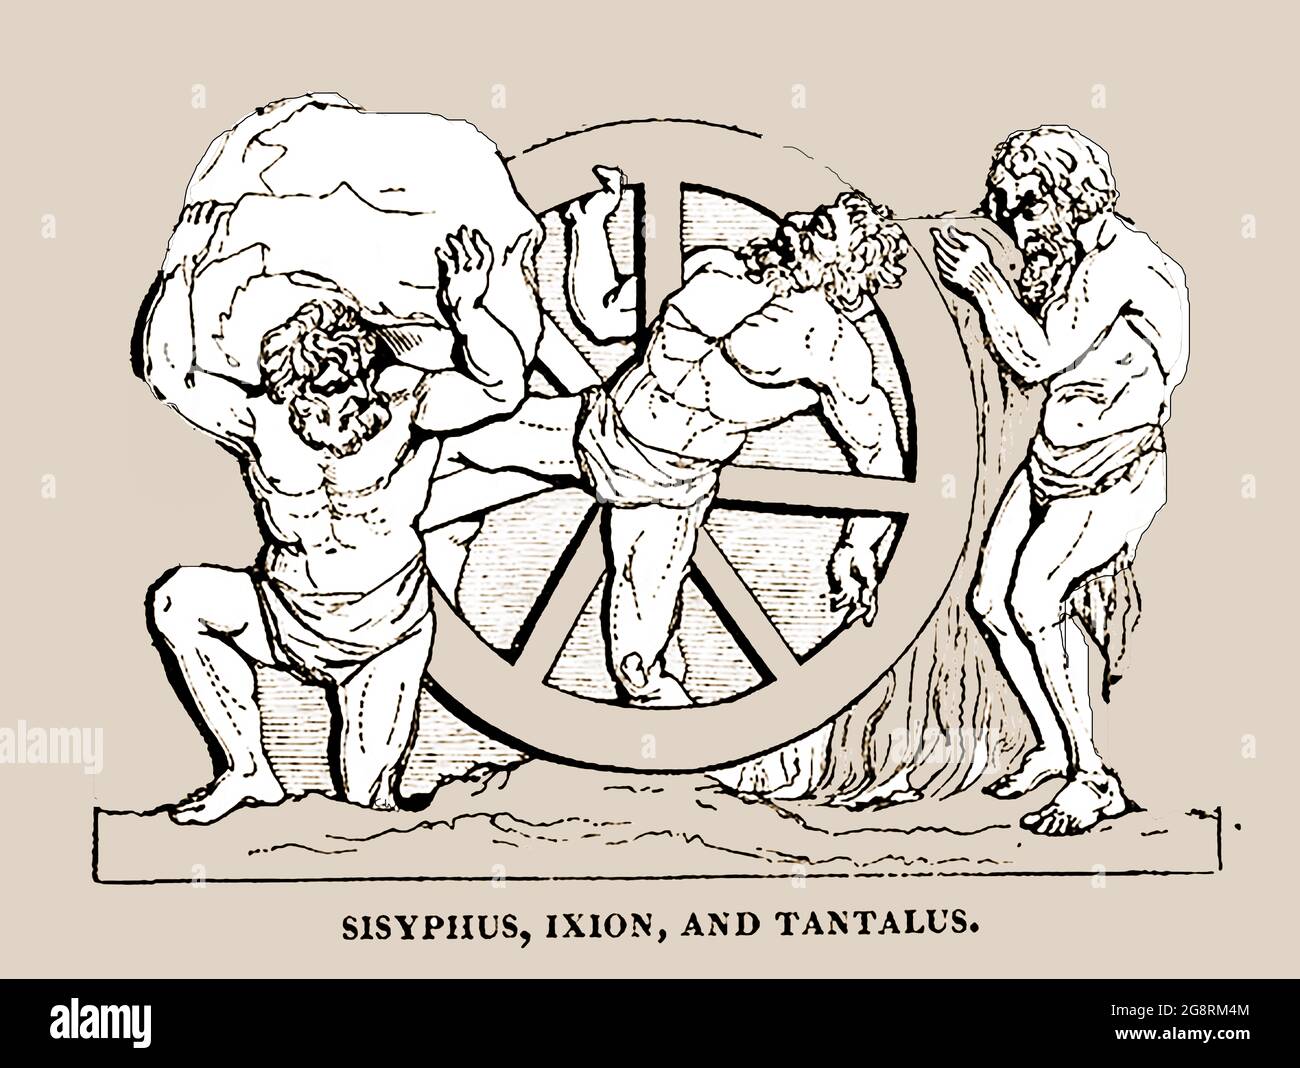 Una representación en 1839 de las figuras mitológicas Sisyphus .Ixion y Tantalus. Sisifhus o Sisifhos era el fundador y rey de Efira (ahora conocido como Corinto) y fue sentenciado a rodar una roca por una colina por la eternidad mientras Ixión era rey de los Lapitos, la tribu más antigua de Tesalónica y estaba atado a una rueda solar ardiente por la eternidad. Tantalus también conocido como Atyus y a veces conocido como Rey de Phrygia. Es recordado por el proverbio de 'castigos tantaleos' (siendo tentado por algo que uno no puede tener). Foto de stock